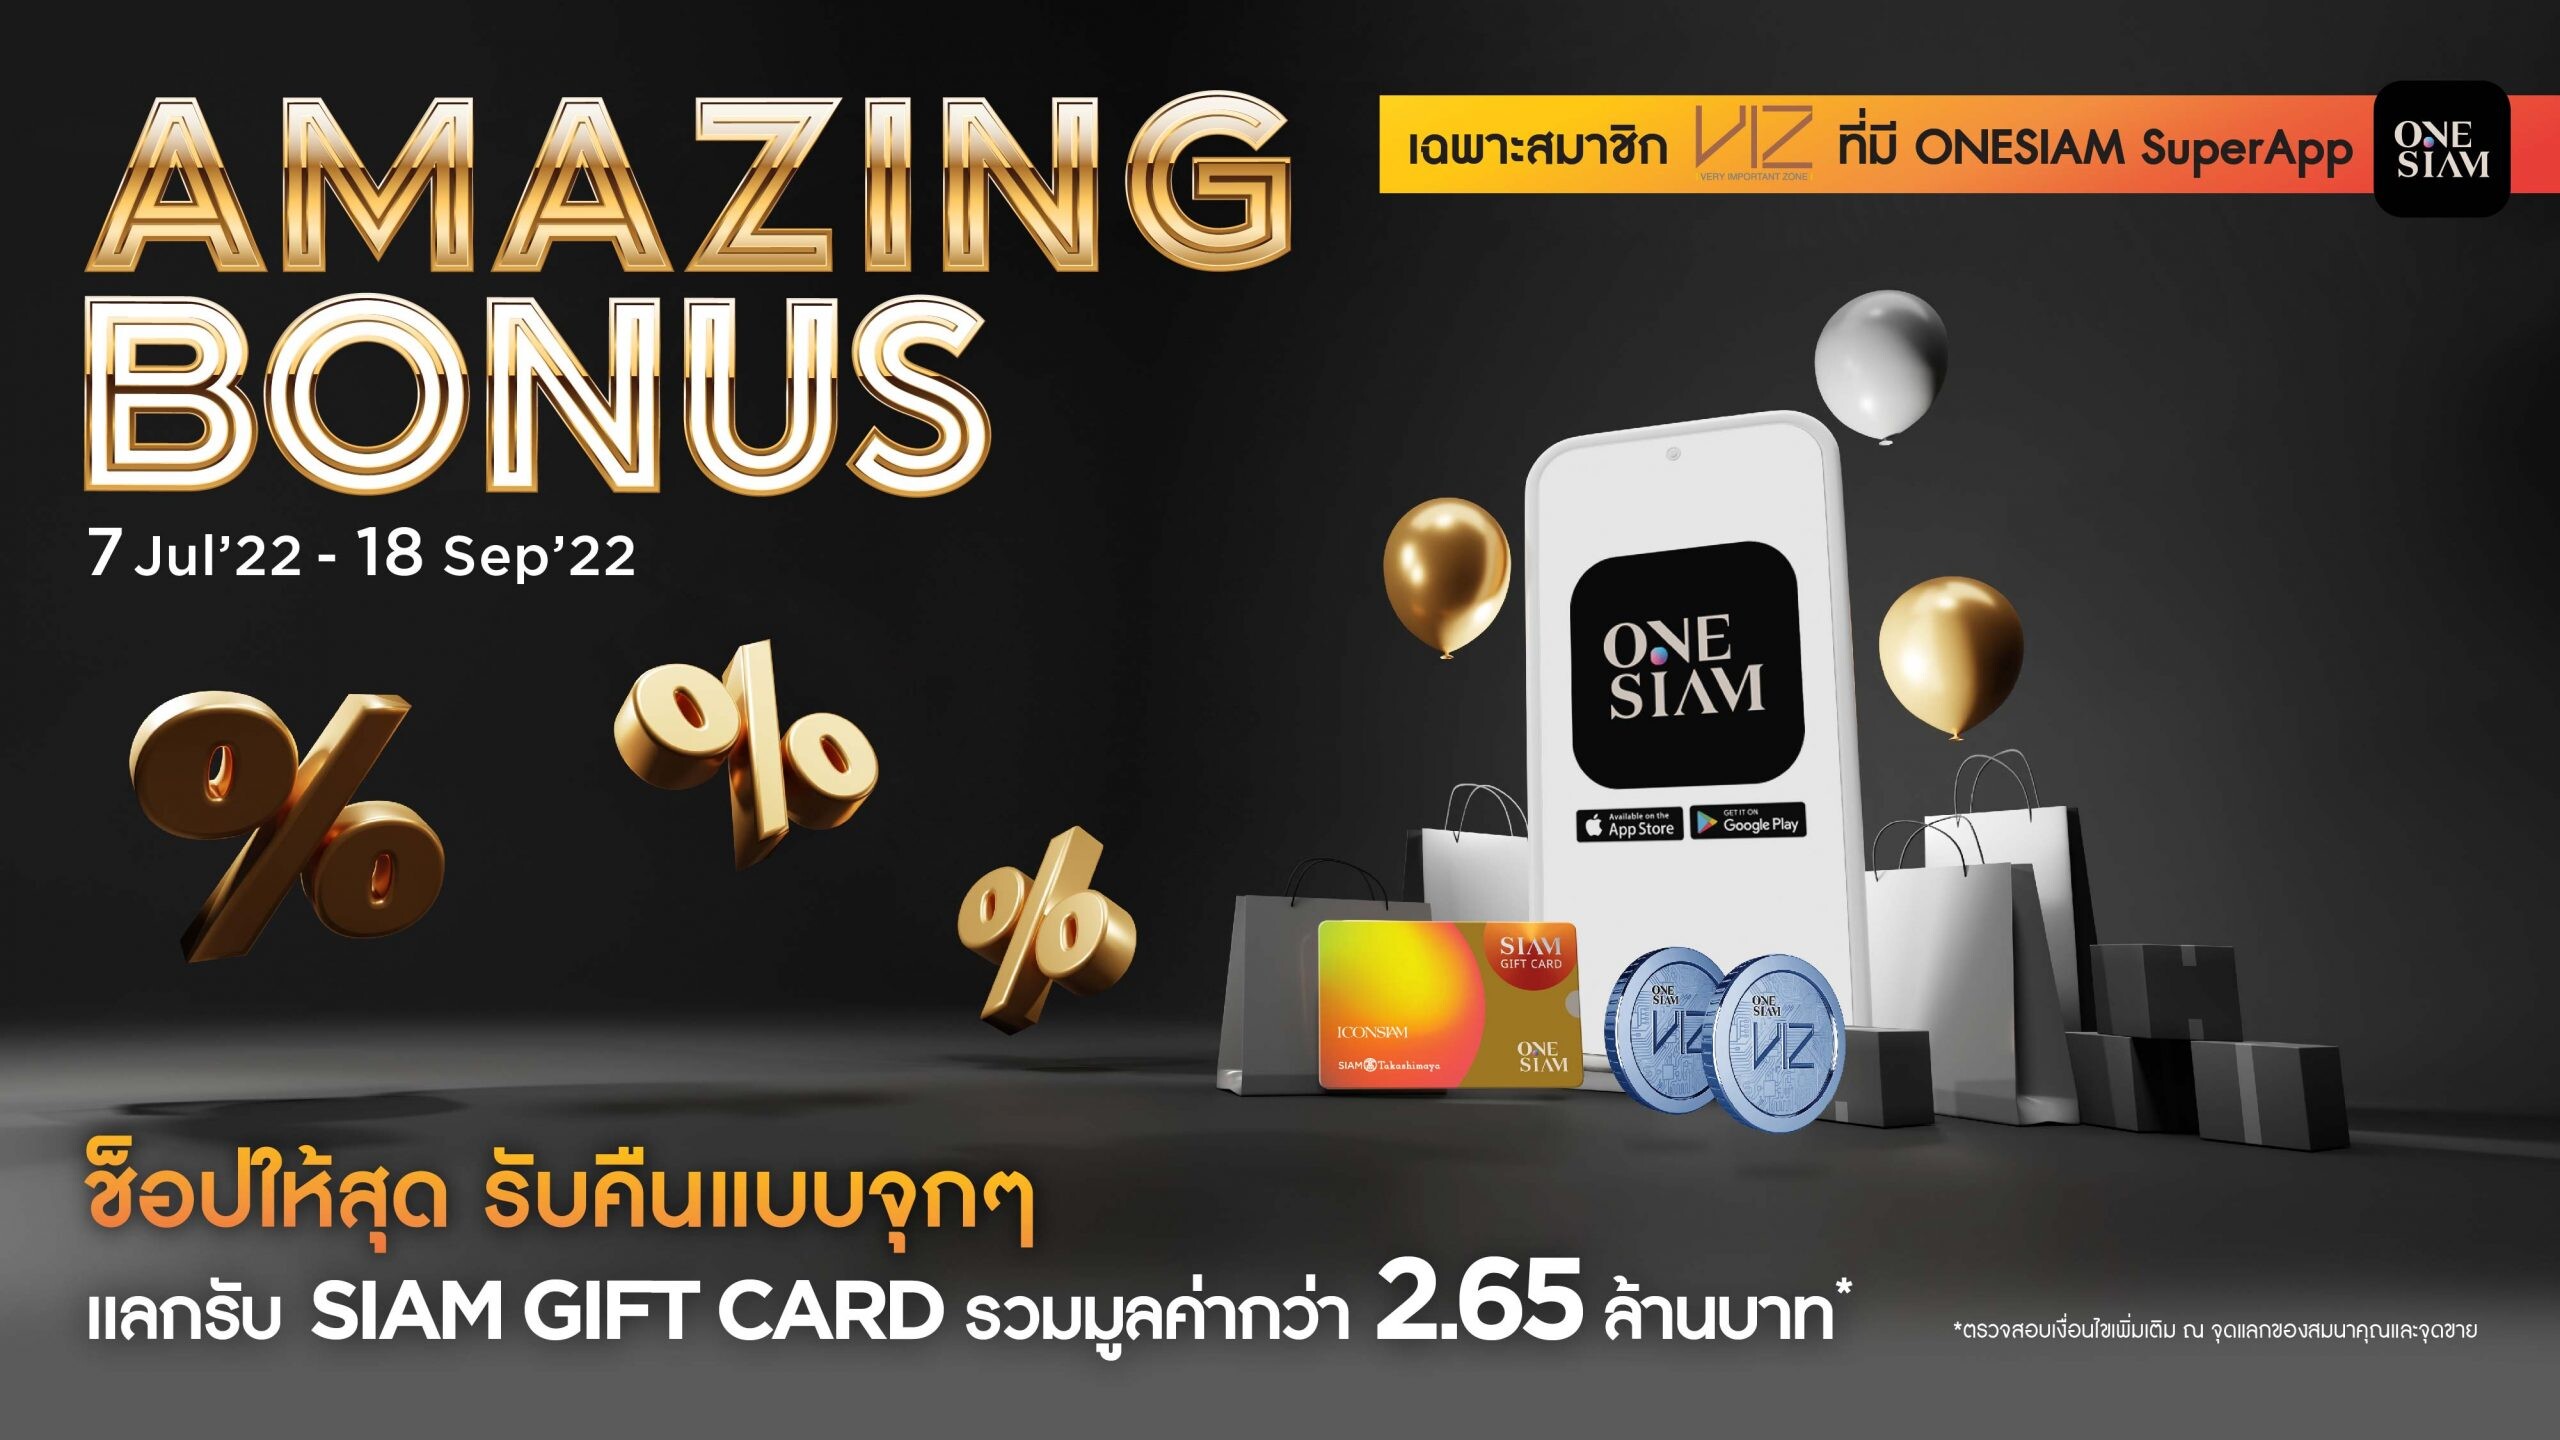 ไอคอนสยาม คืนกำไรให้นักช้อป จัดแคมเปญโปรโมชั่นสุดพิเศษ  "ICONSIAM AMAZING BONUS" ช้อปให้สุด รับคืนแบบจุกๆ  แลกรับ Siam Gift Card มูลค่ารวมกว่า 2.65 ล้านบาท!!!